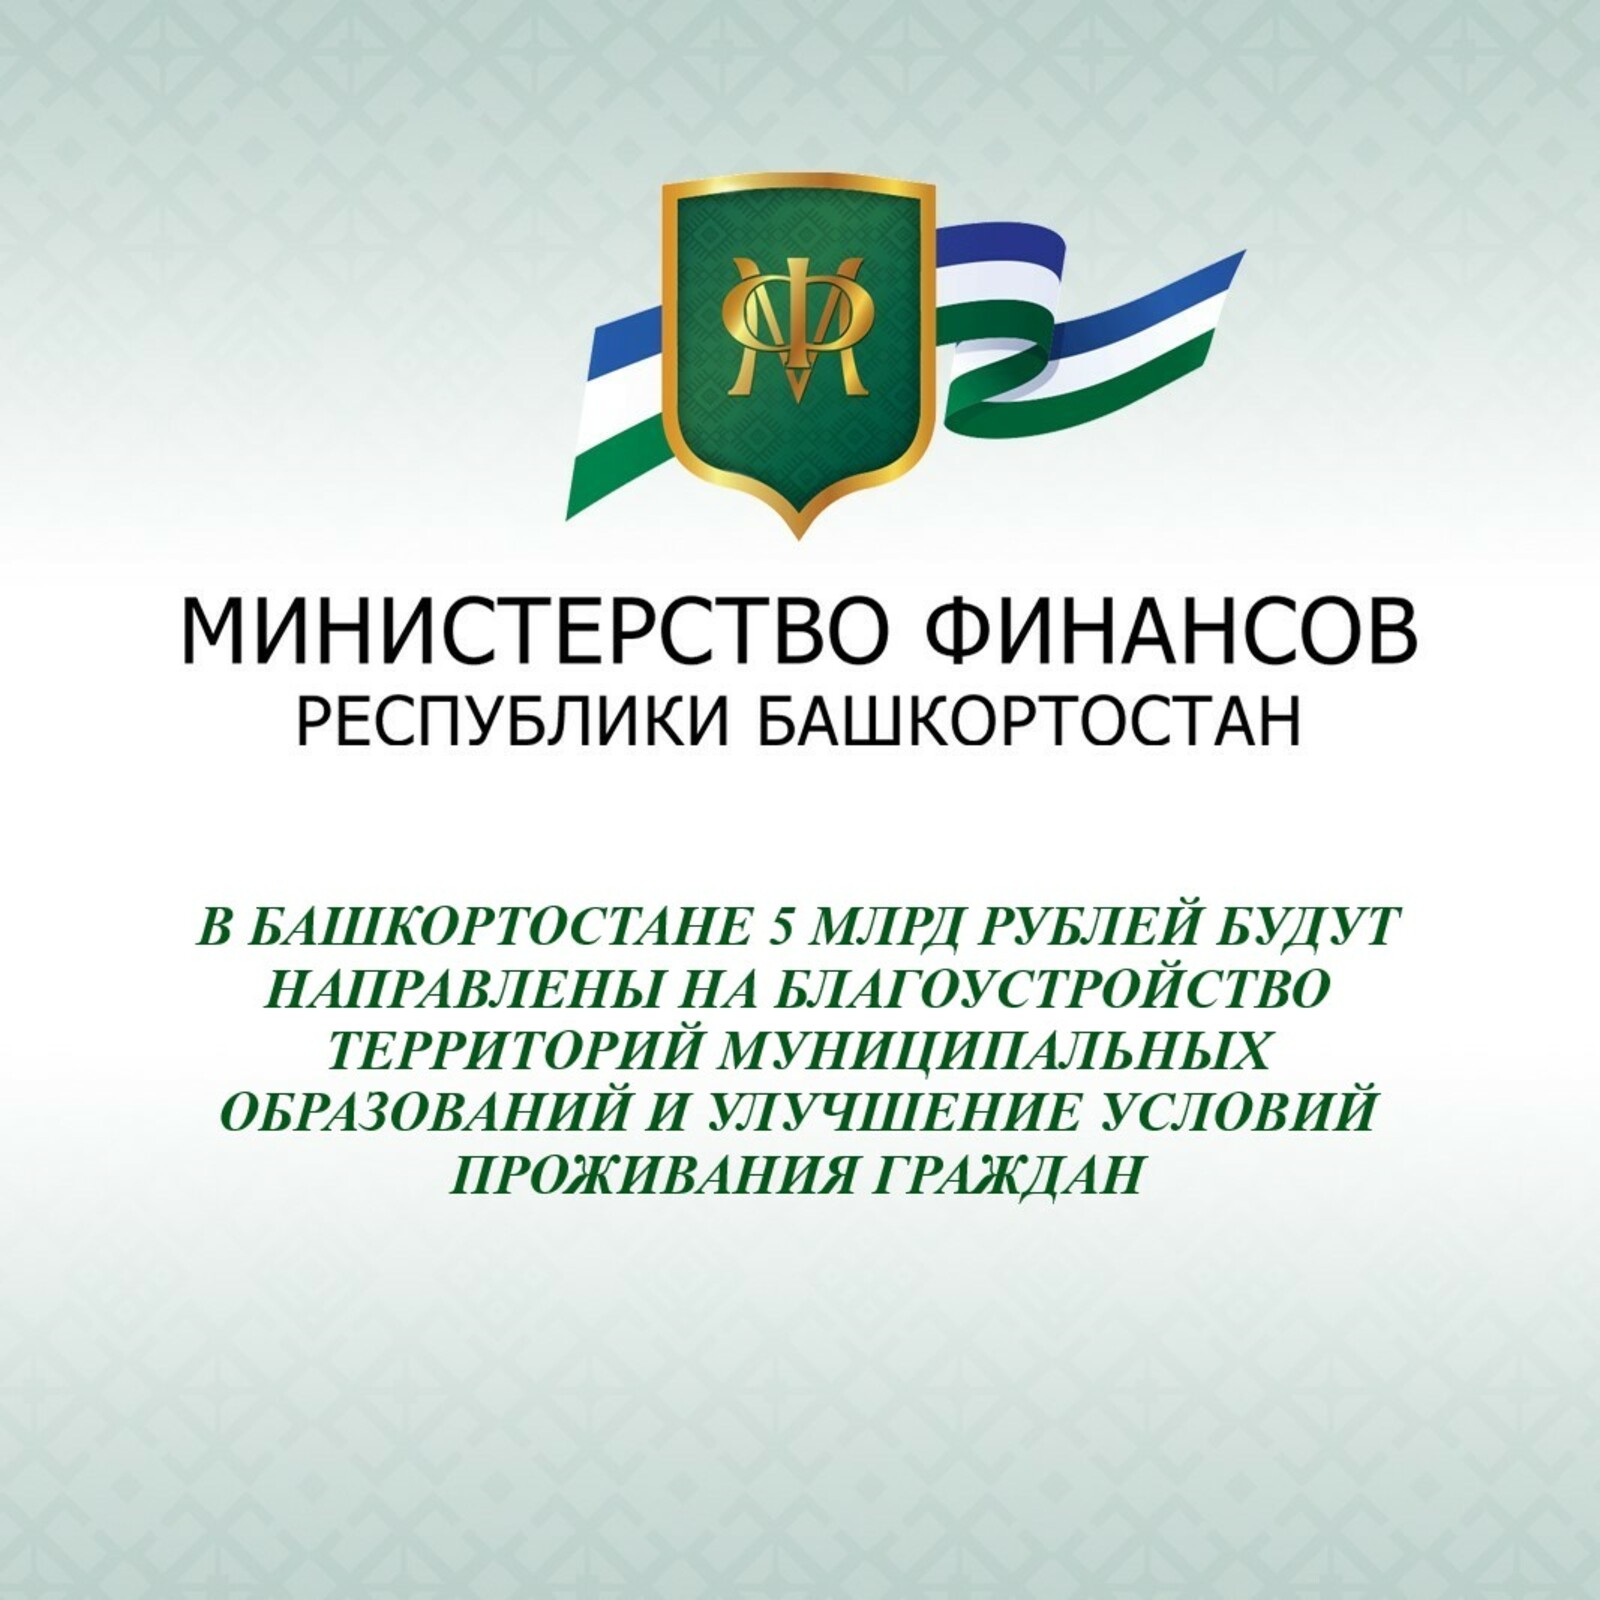 В Башкортостане 5 млрд рублей будут направлены на благоустройство территорий муниципальных образований и улучшение условий проживания граждан